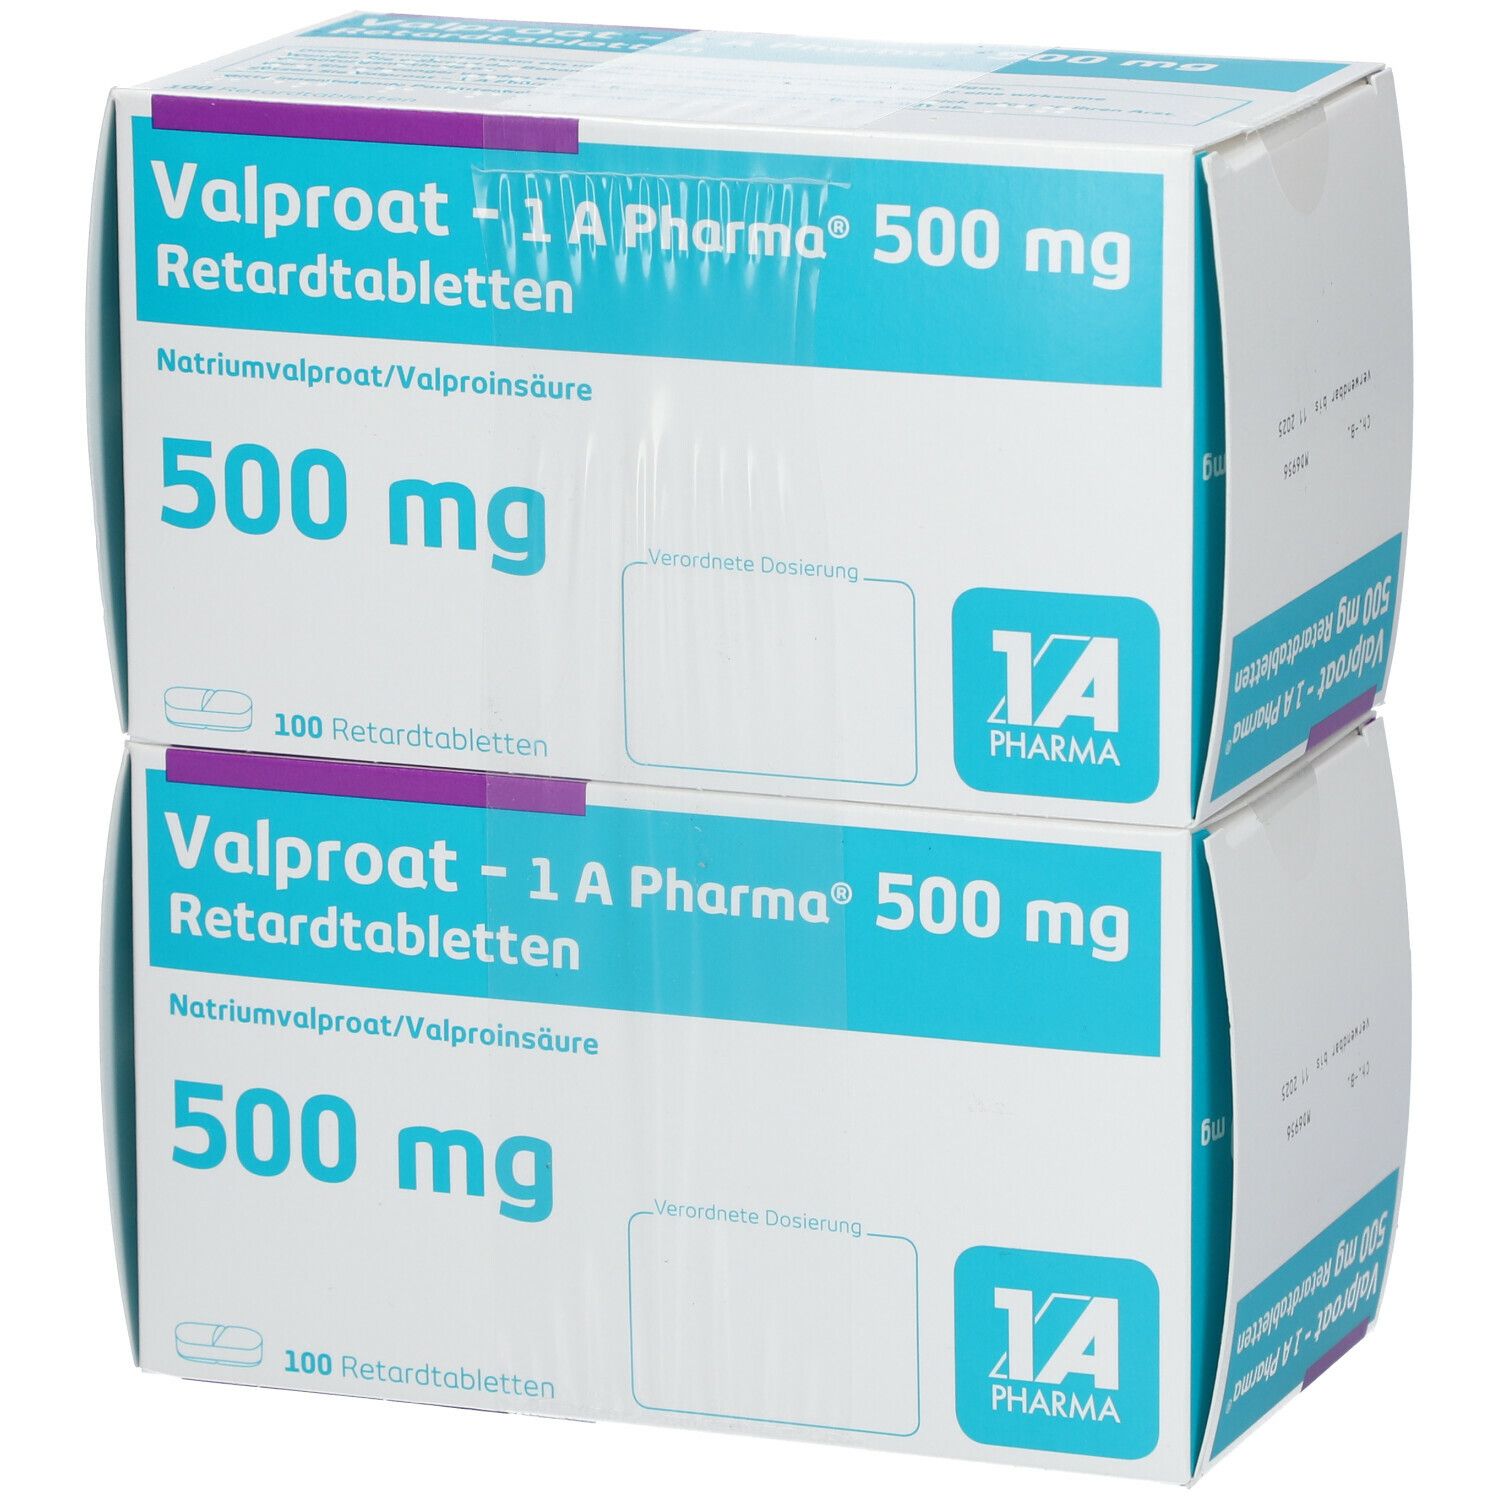 Valproat - 1A Pharma® 500Mg